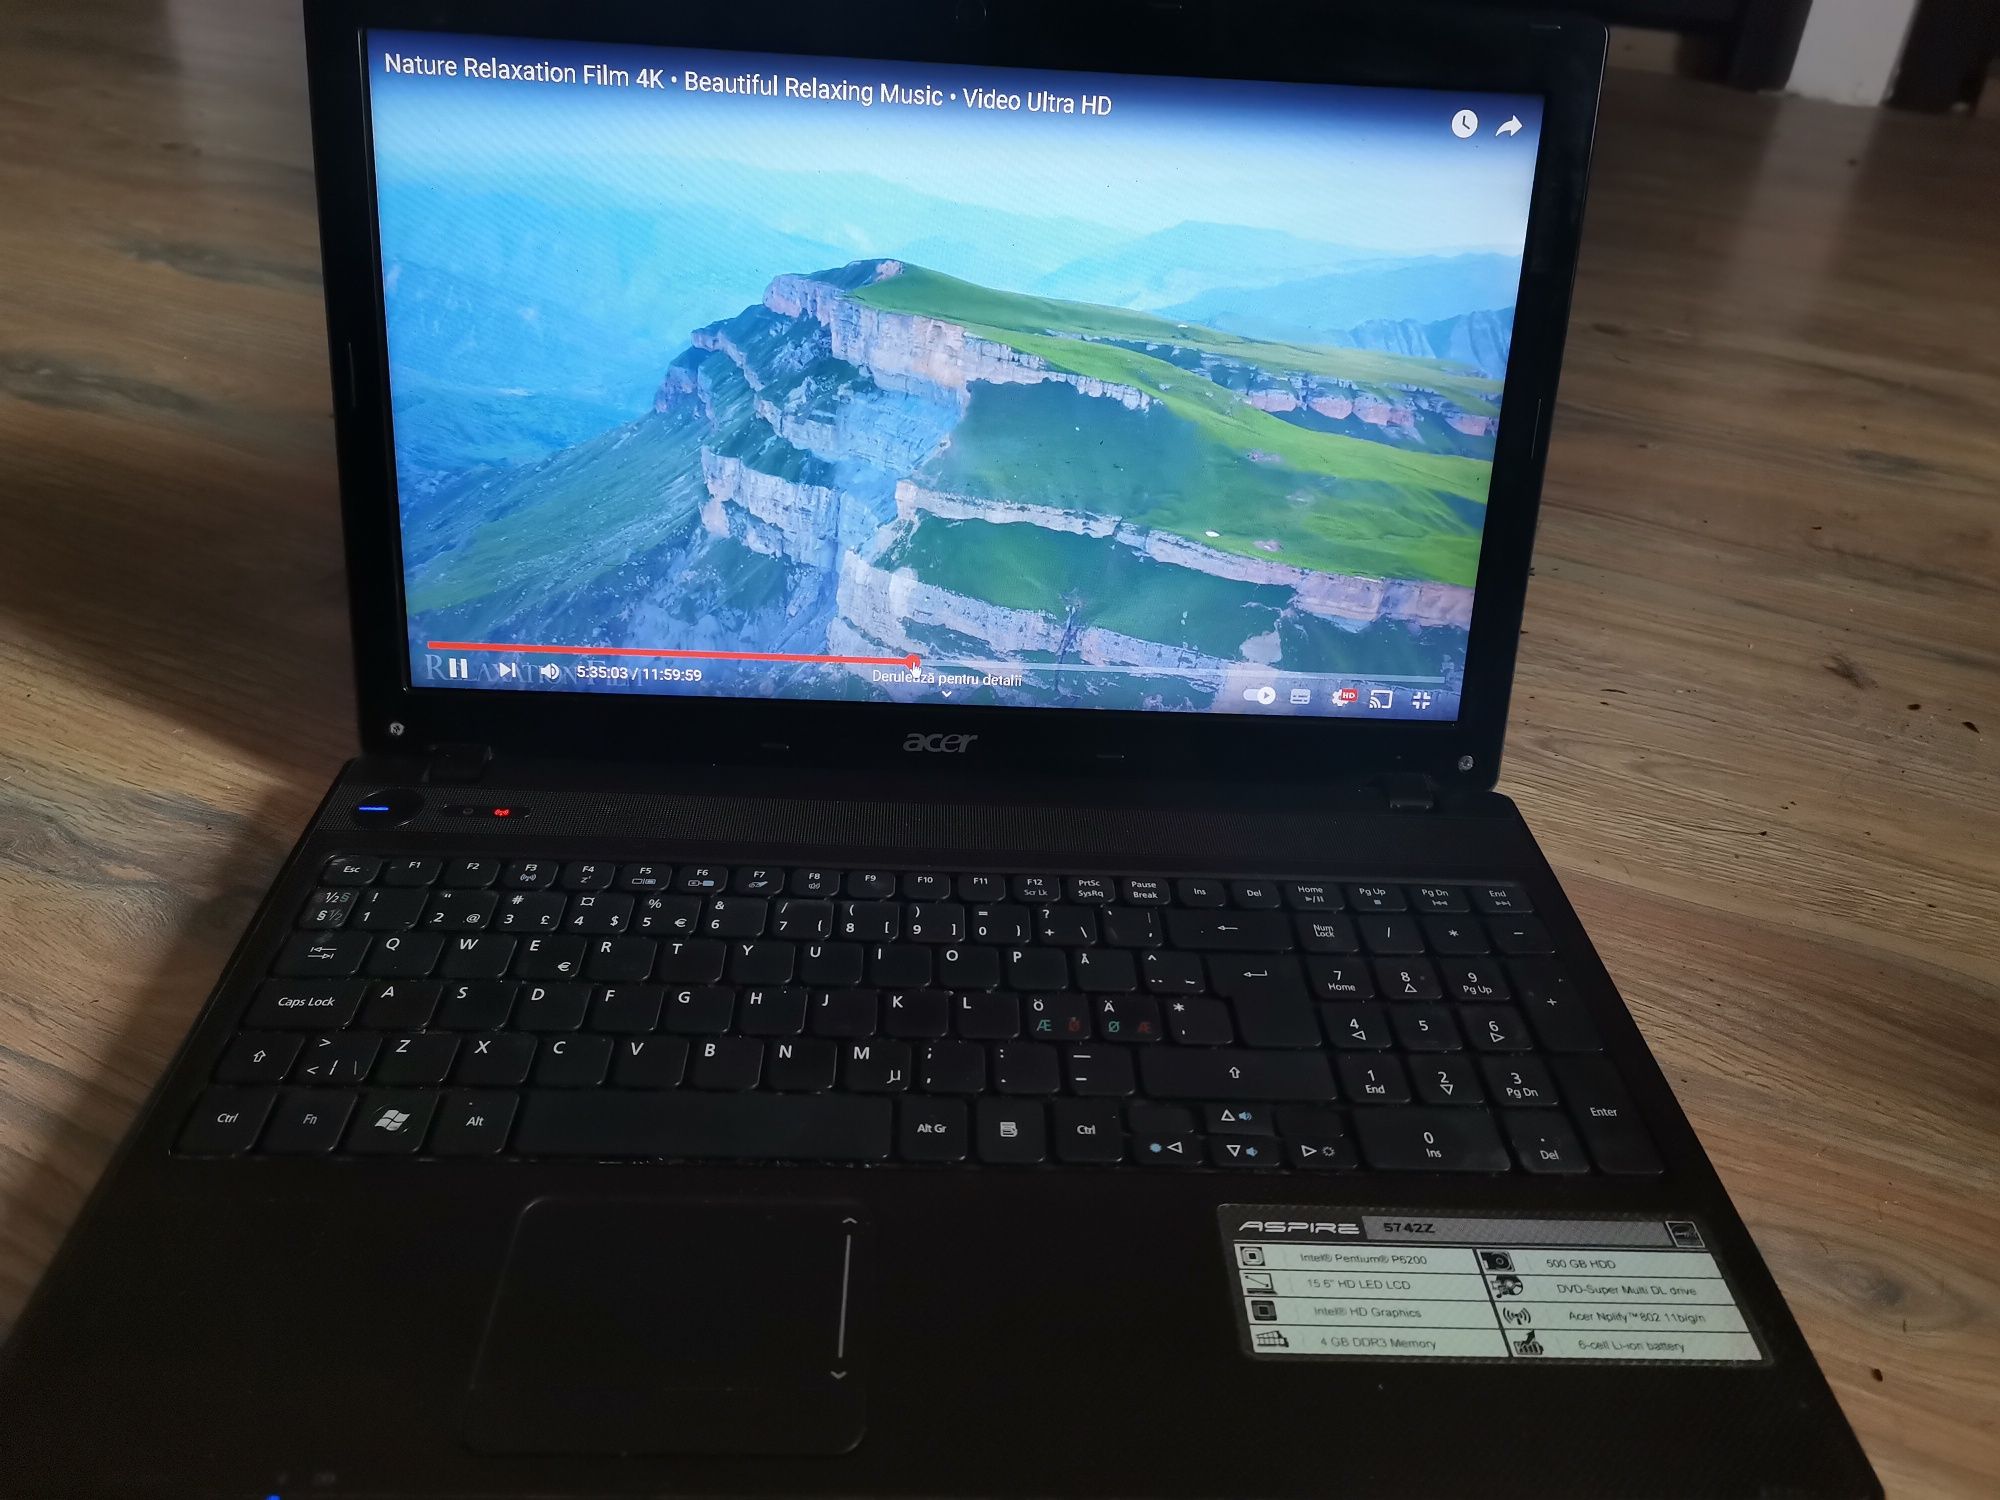 Laptop Acer i3 8gb ram ssd nou